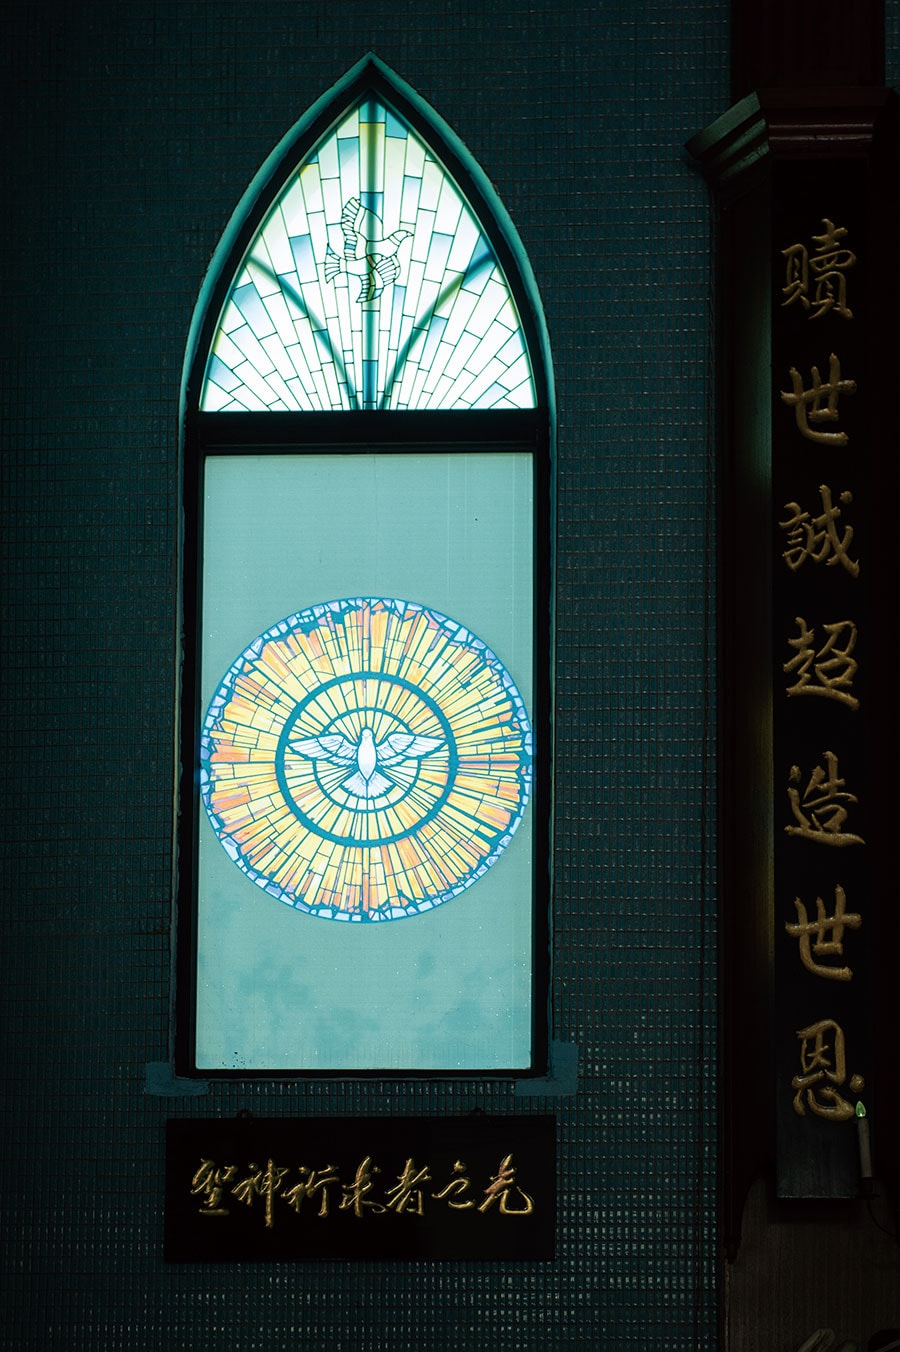 羅東聖母升天堂でステンドグラスと中国語の取り合わせがエキゾチック。 